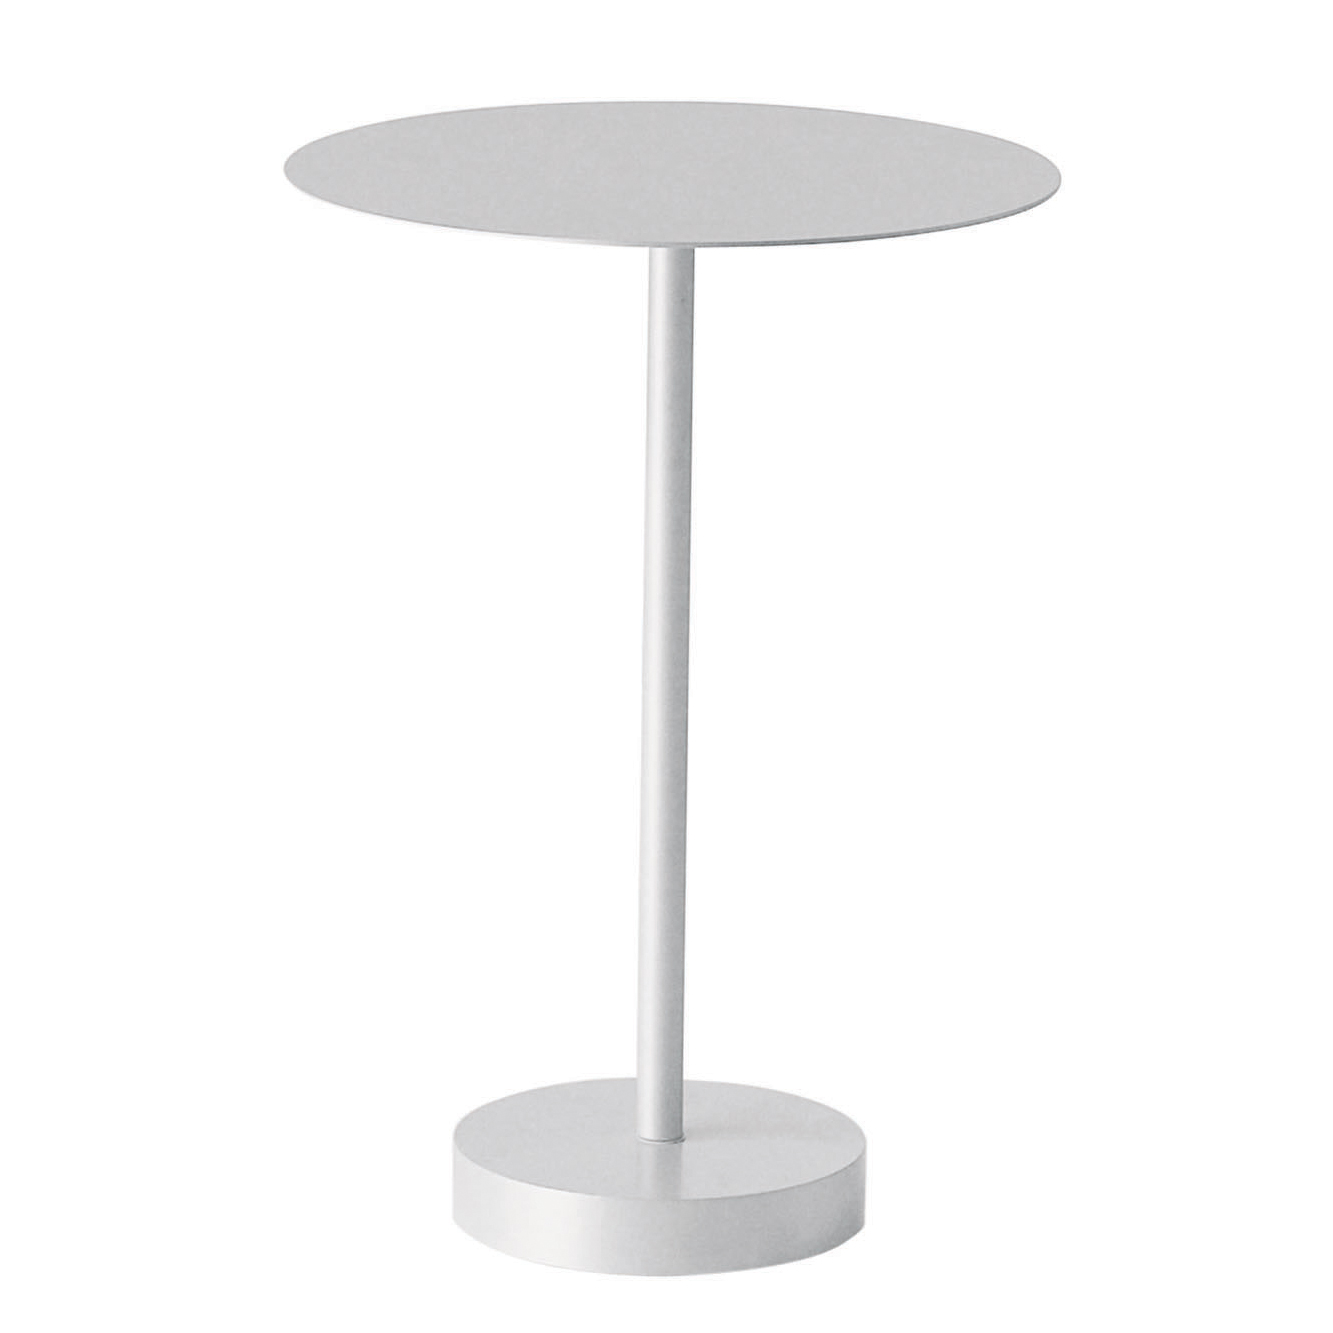 Bincan Side Table by Danese Milano | DX0050E10 | DMI596814